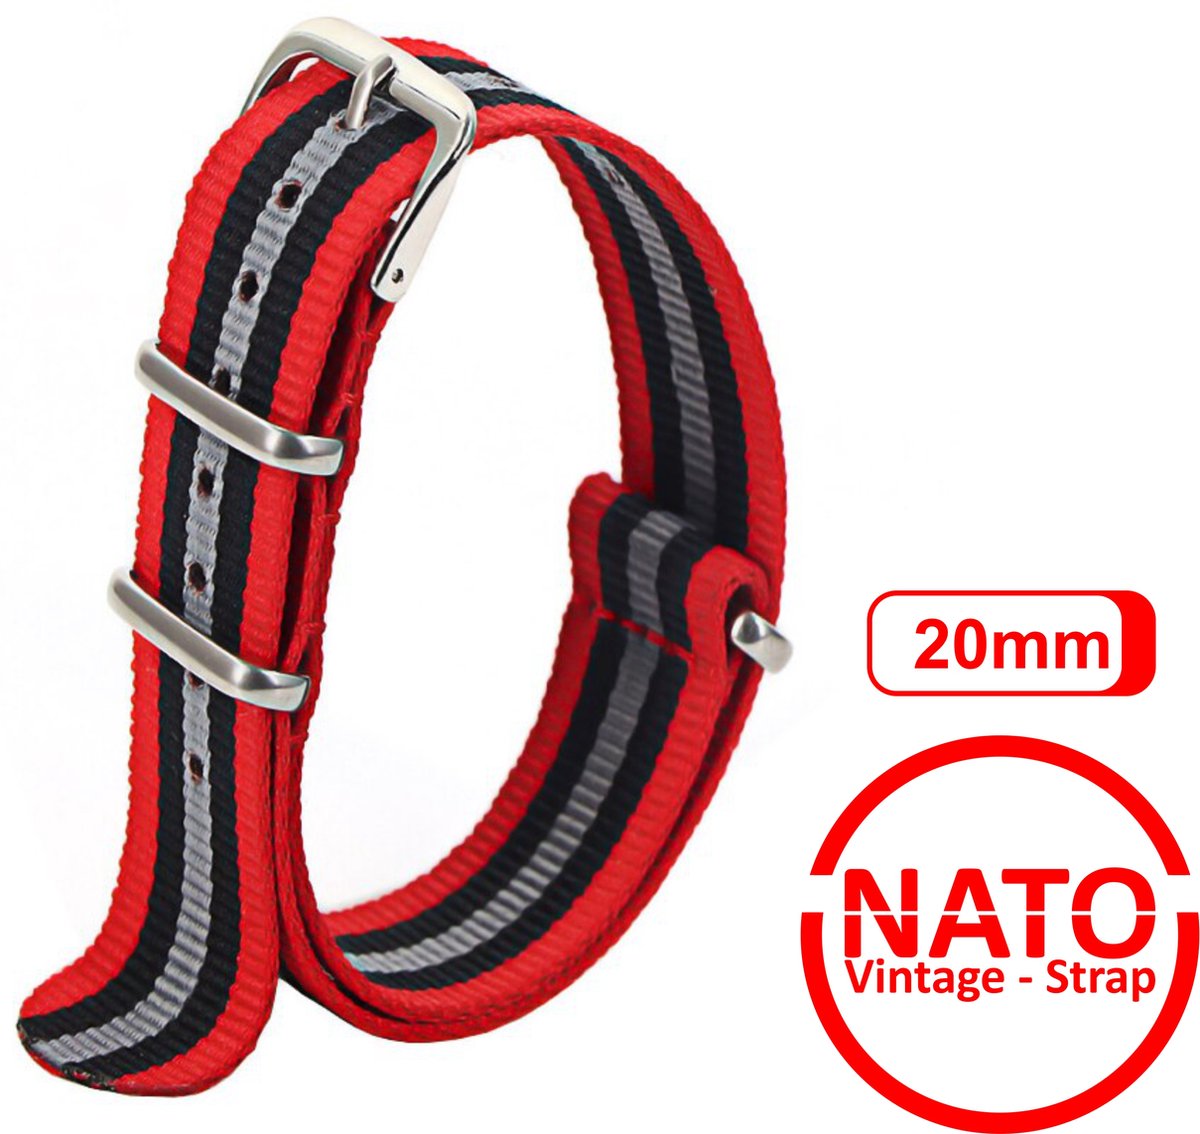 20mm Premium Nato Strap Rood Grijs Zwart - Vintage James Bond - Nato Strap collectie - Mannen Vrouwen - Horlogeband - 20 mm bandbreedte voor oa. Seiko Rolex Omega Casio en Citizen